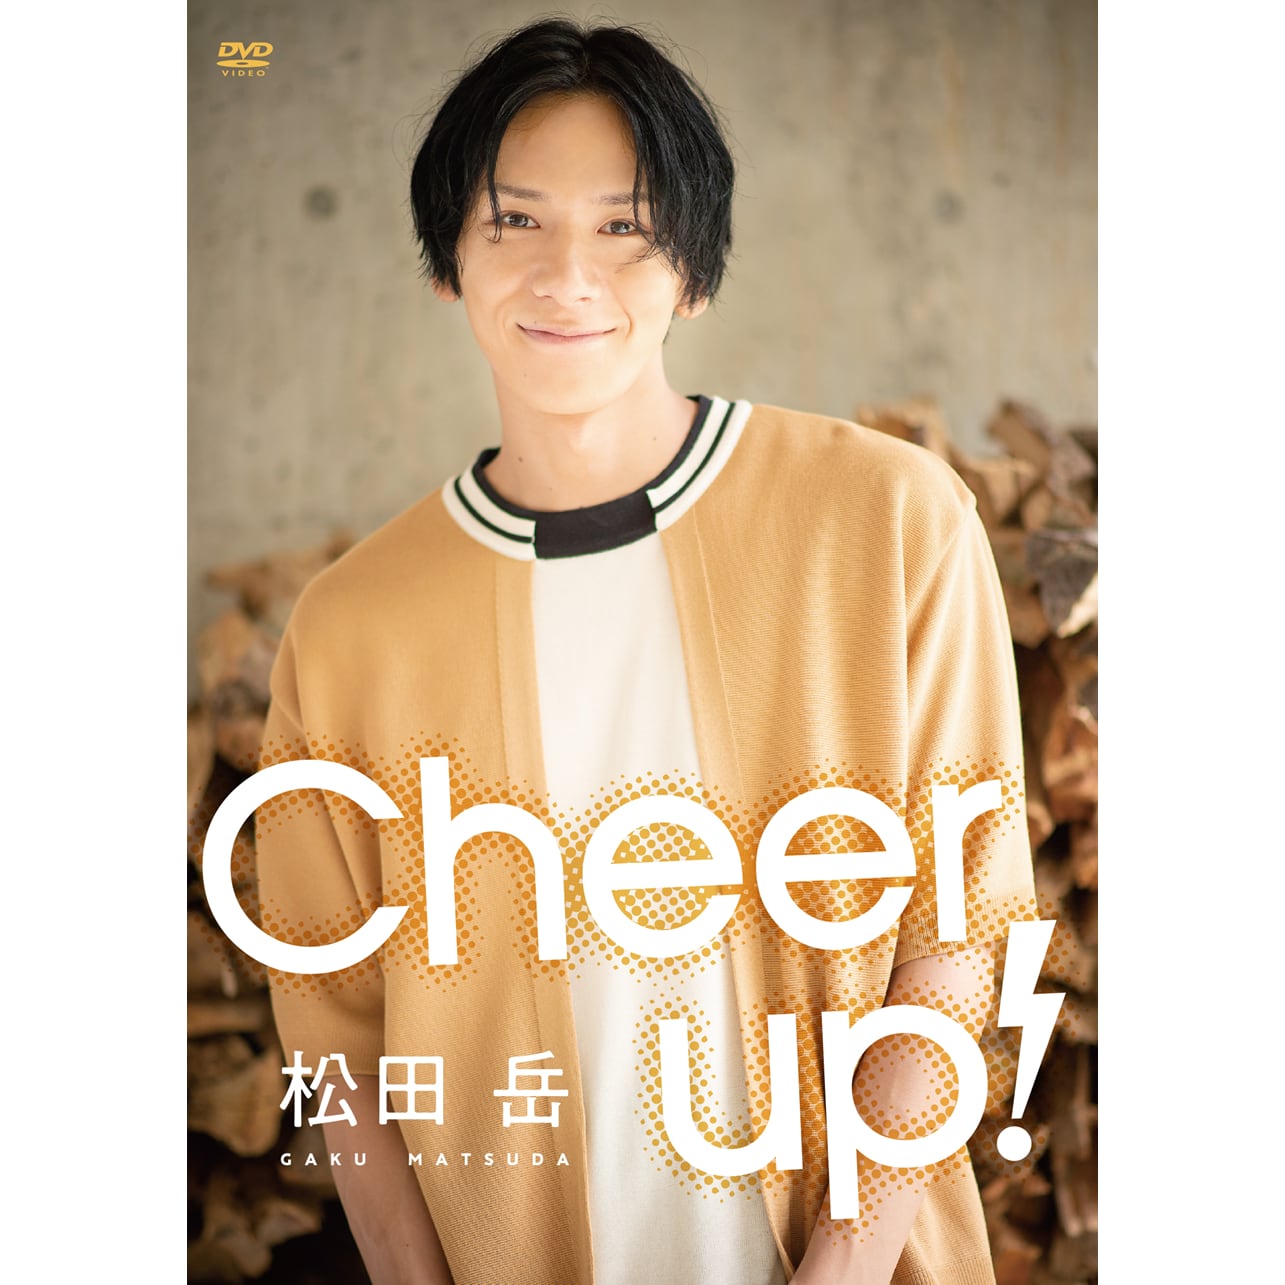 松田岳DVD『Cheer up!』